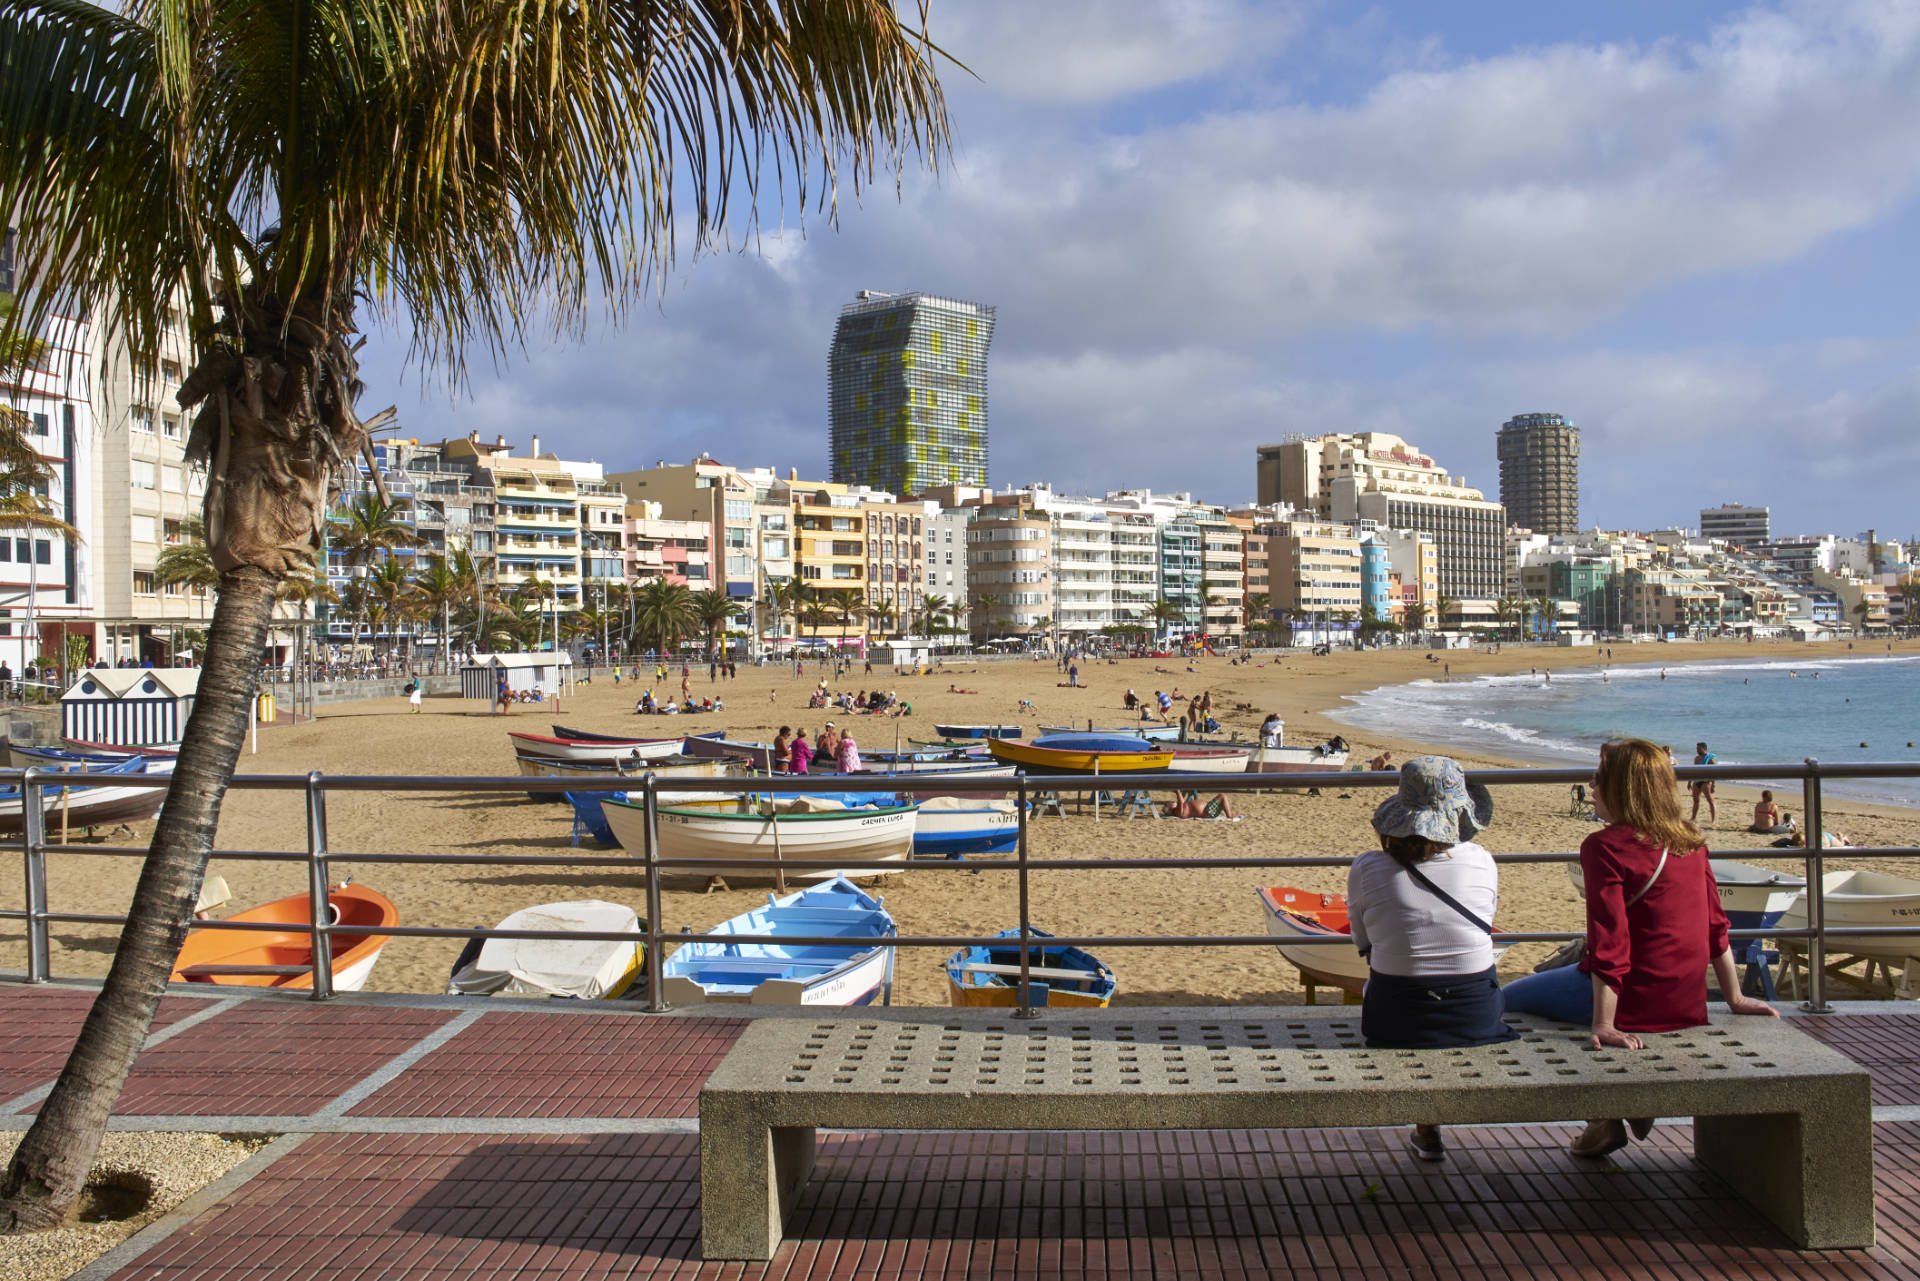 Playa de las Canteras Las Palmas de Gran Canaria.